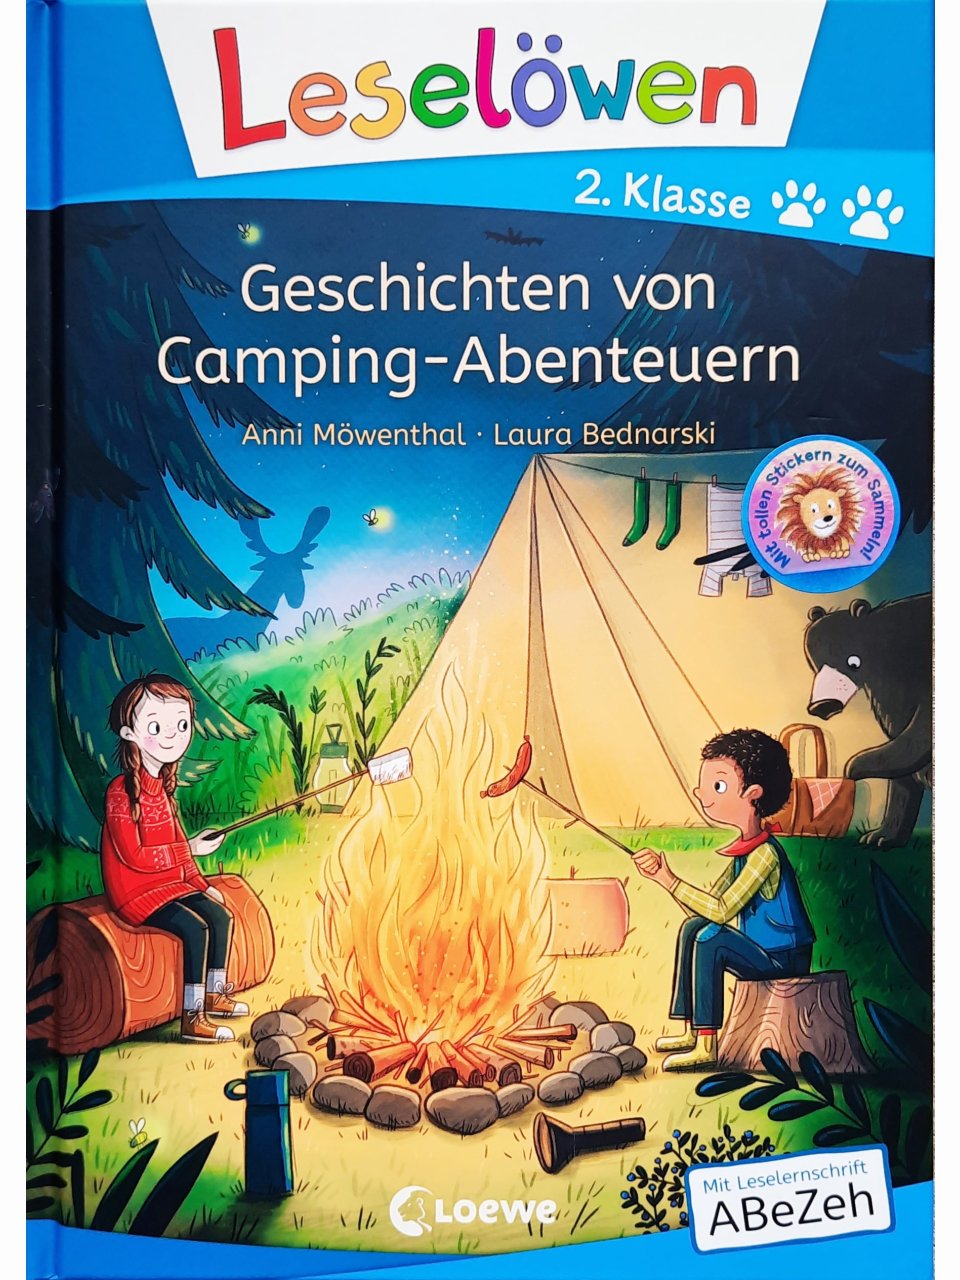 Geschichten von Camping-Abenteuern - Leselöwen 2. Klasse